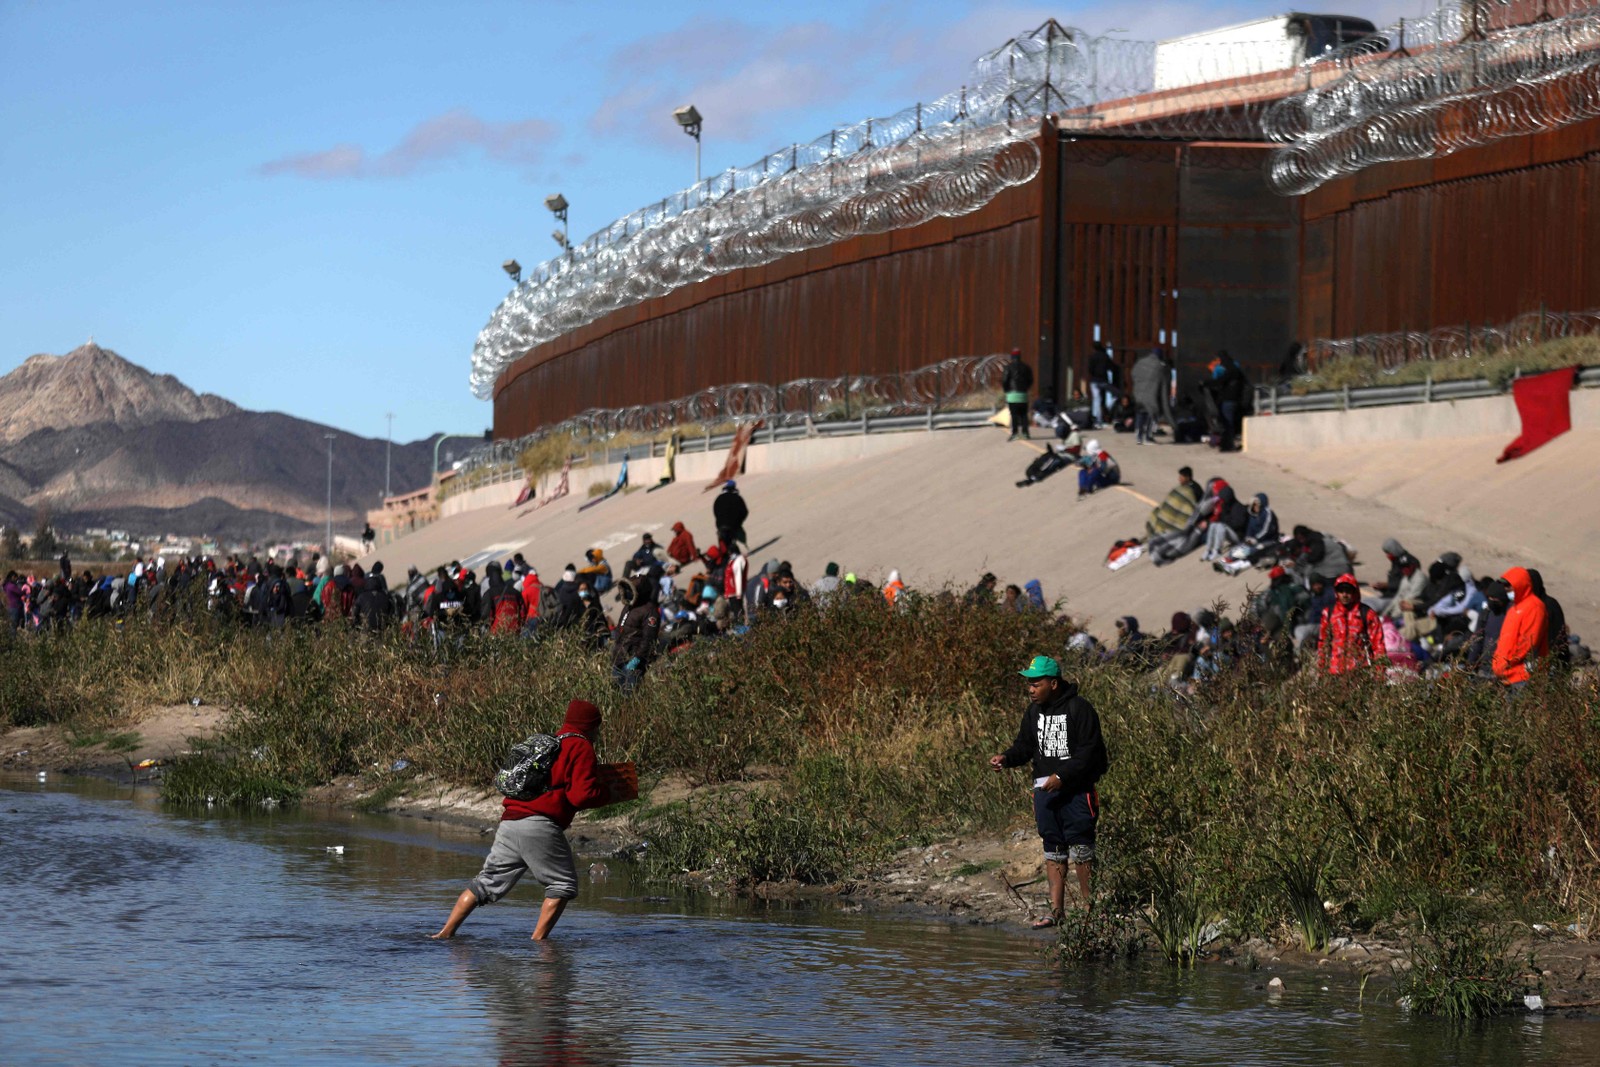 Imigrantes atravessam o Rio Grande para se render aos agentes da fronteira dos EUA, em El Paso, Texas, na divisa com Ciudad Juarez, estado de Chihuahua, México — Foto: Herika Martinez / AFP